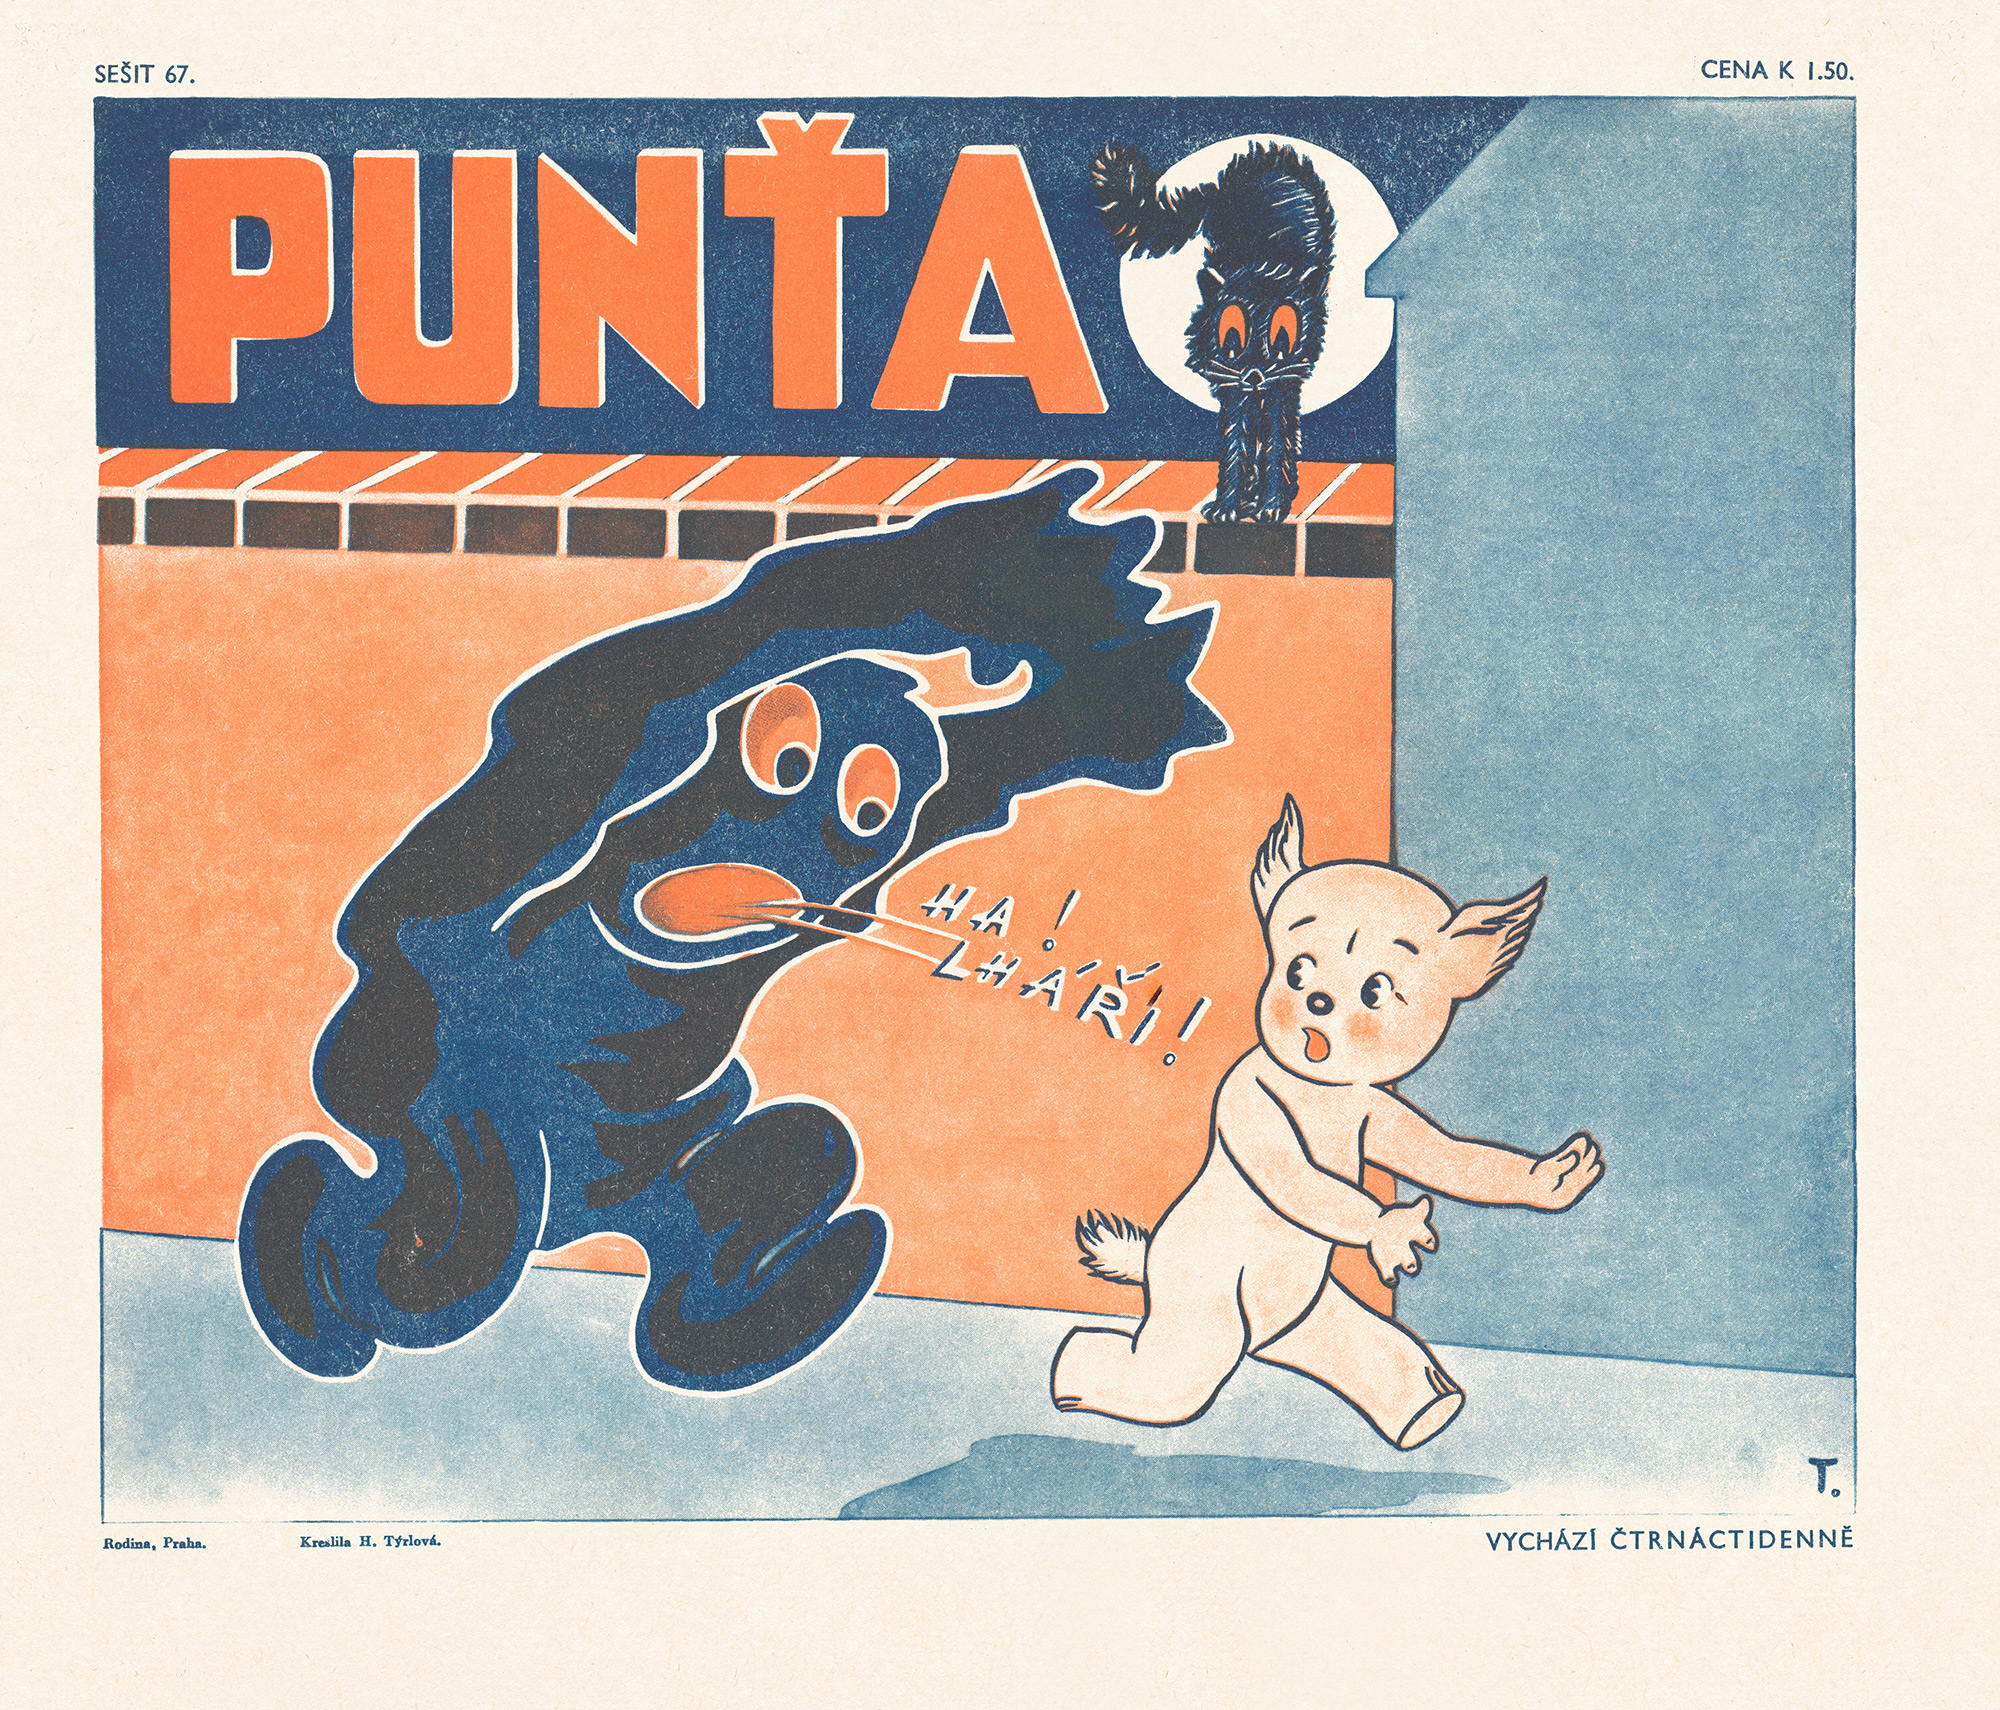 Illustration 1 Hermina Tyrlova - cover of Punta magazine, 1939